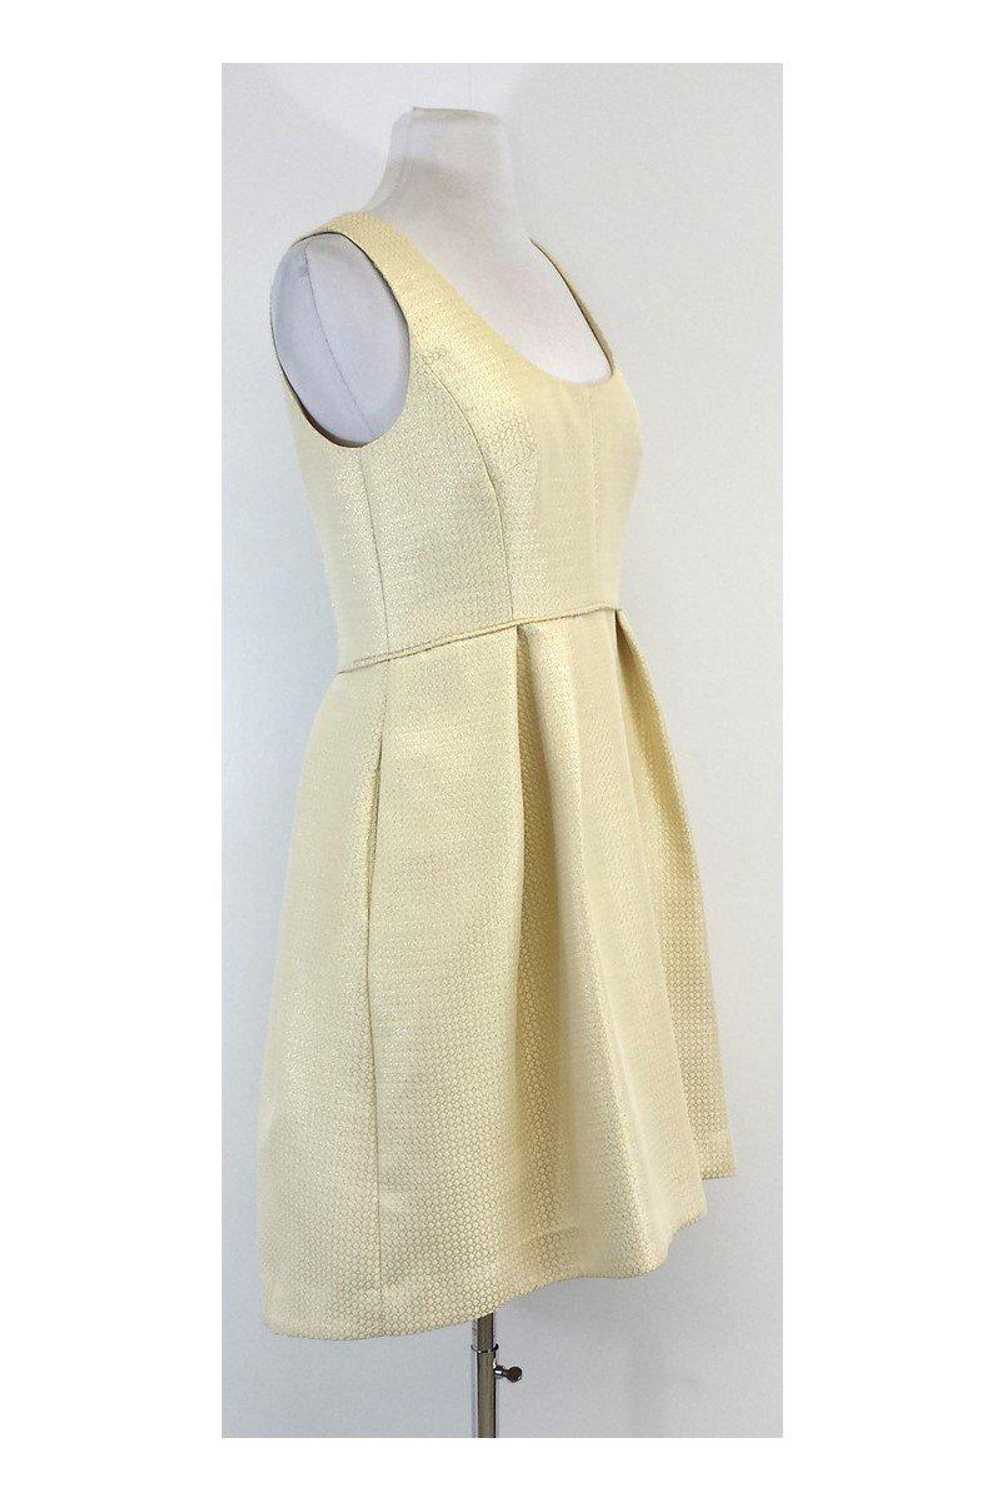 Shoshanna - Gold Textured Sleeveless Pleated Dres… - image 2